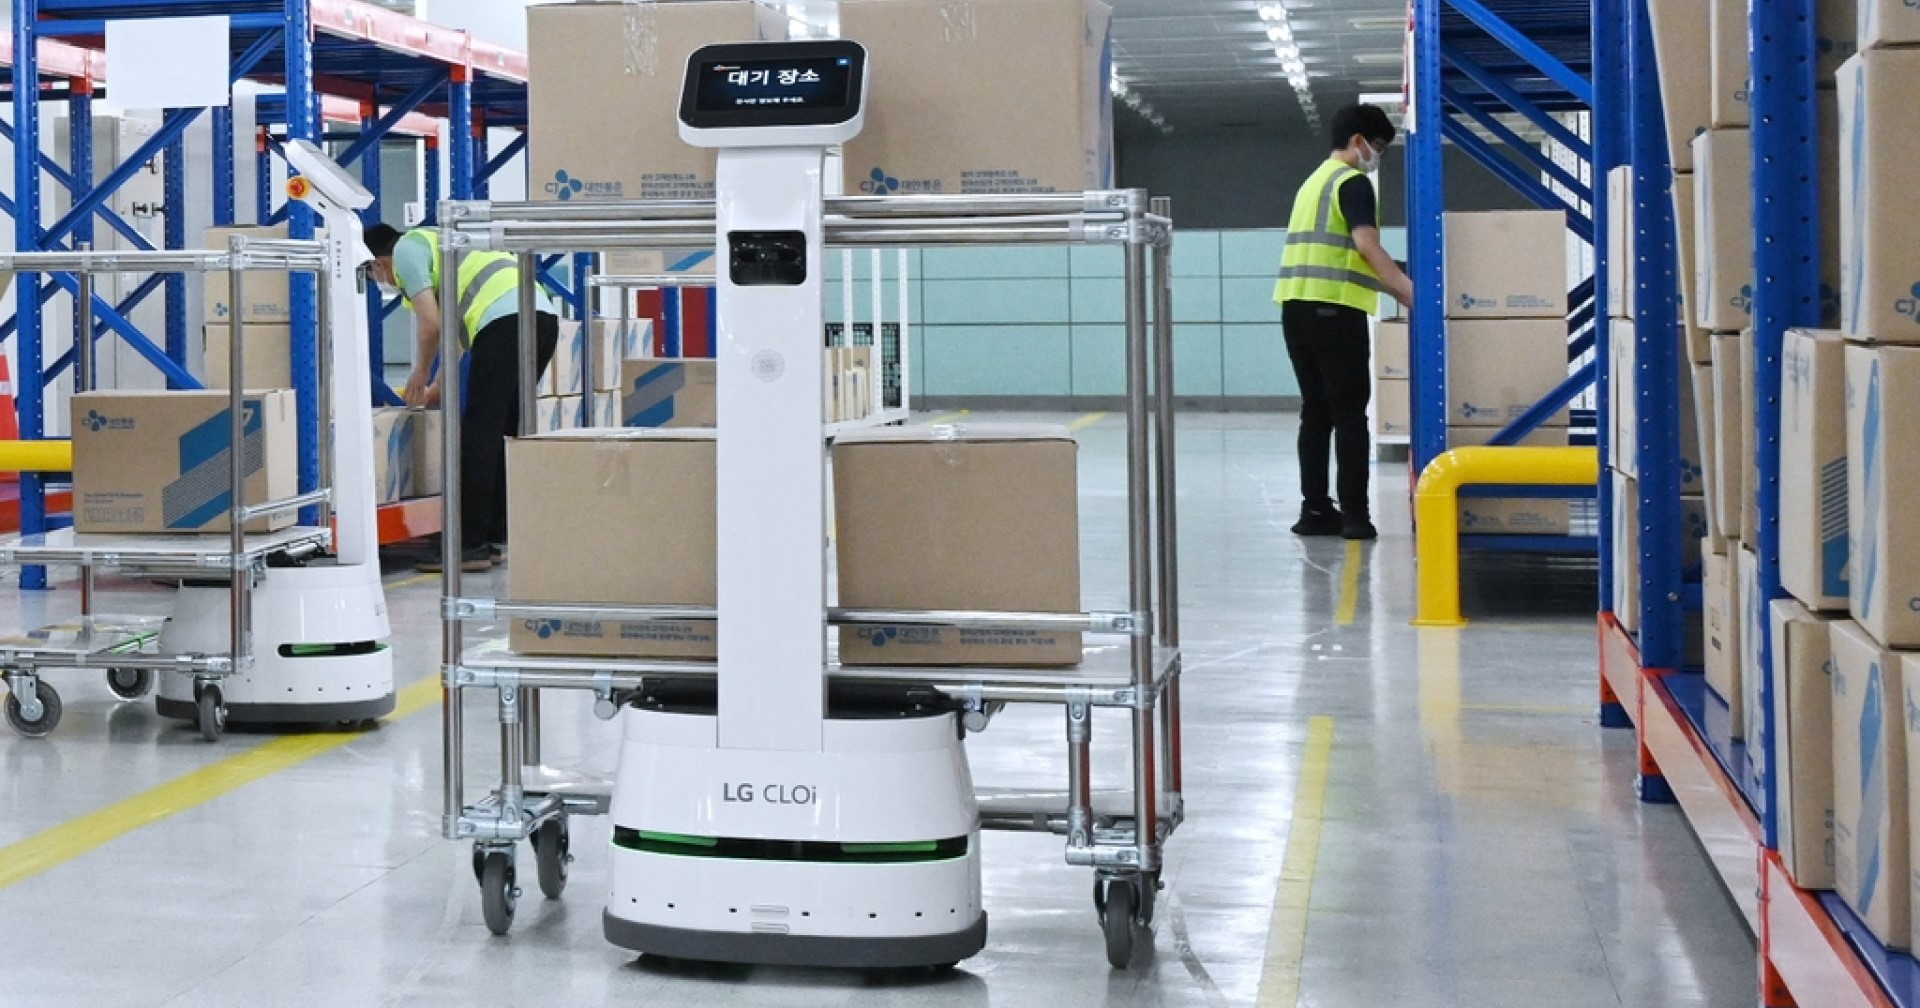 LG จับมือบริษัทขนส่ง พร้อมก้าวเข้าสู่ตลาดโลจิสติกส์ด้วยระบบหุ่นยนต์อัตโนมัติ